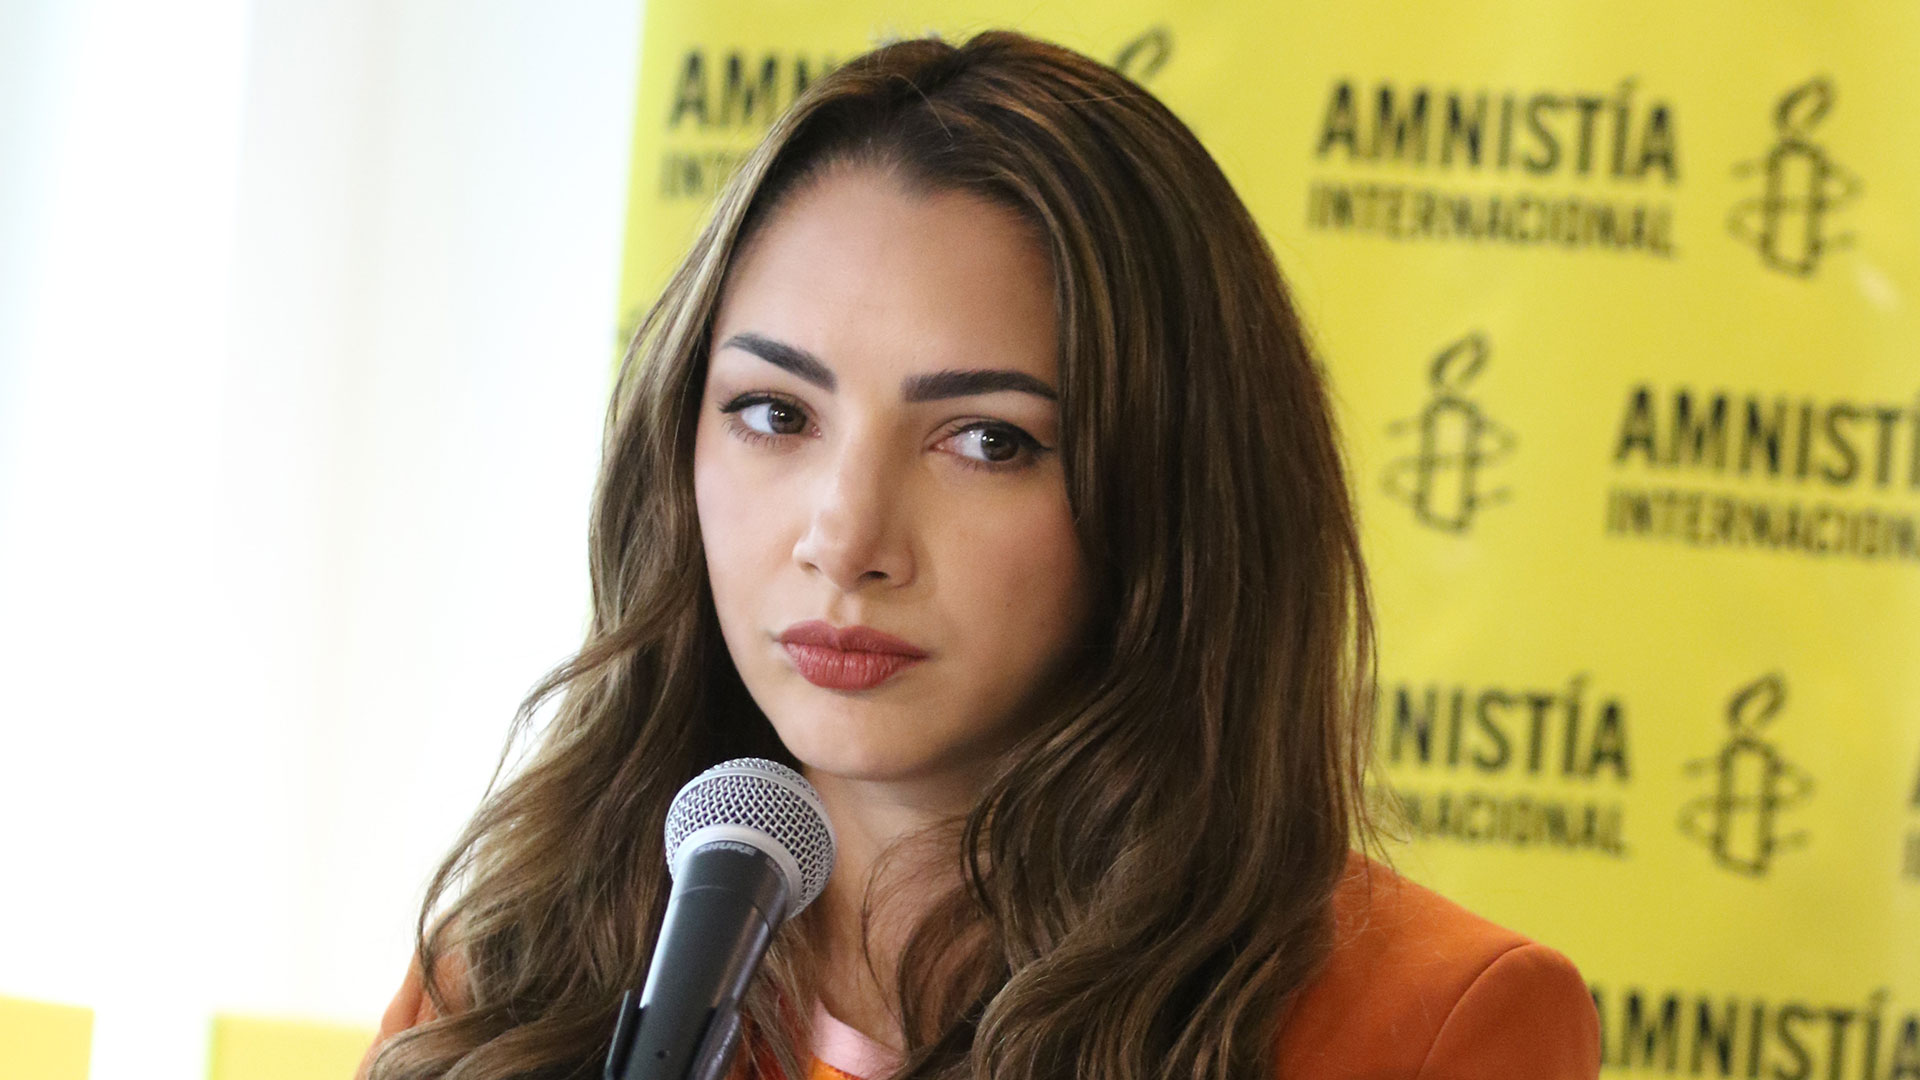 La actriz presentó la denuncia por abuso sexual agravado en diciembre de 2018 (Ramiro Souto)
